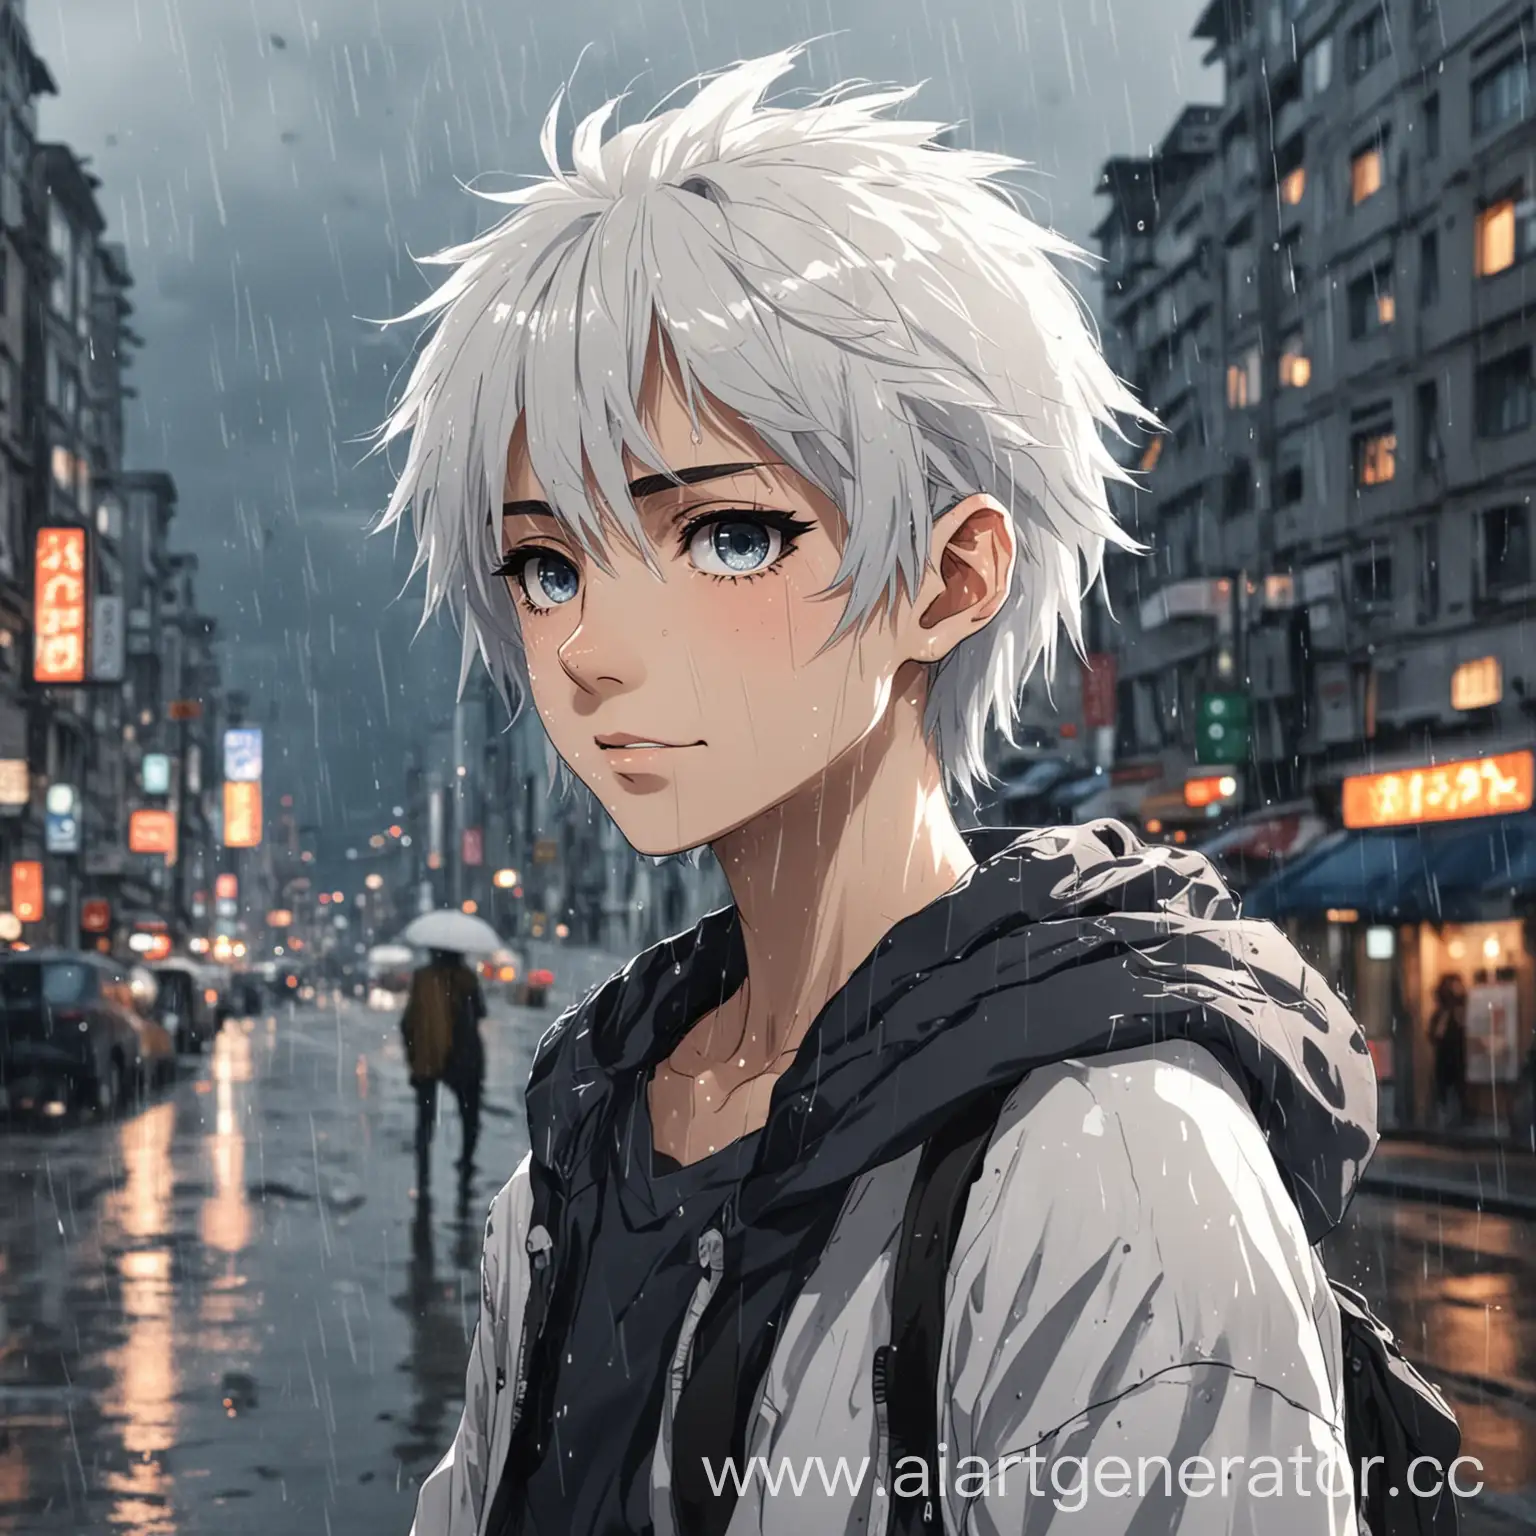 аниме подростка с белыми волосами. На фоне большой дождливый город.